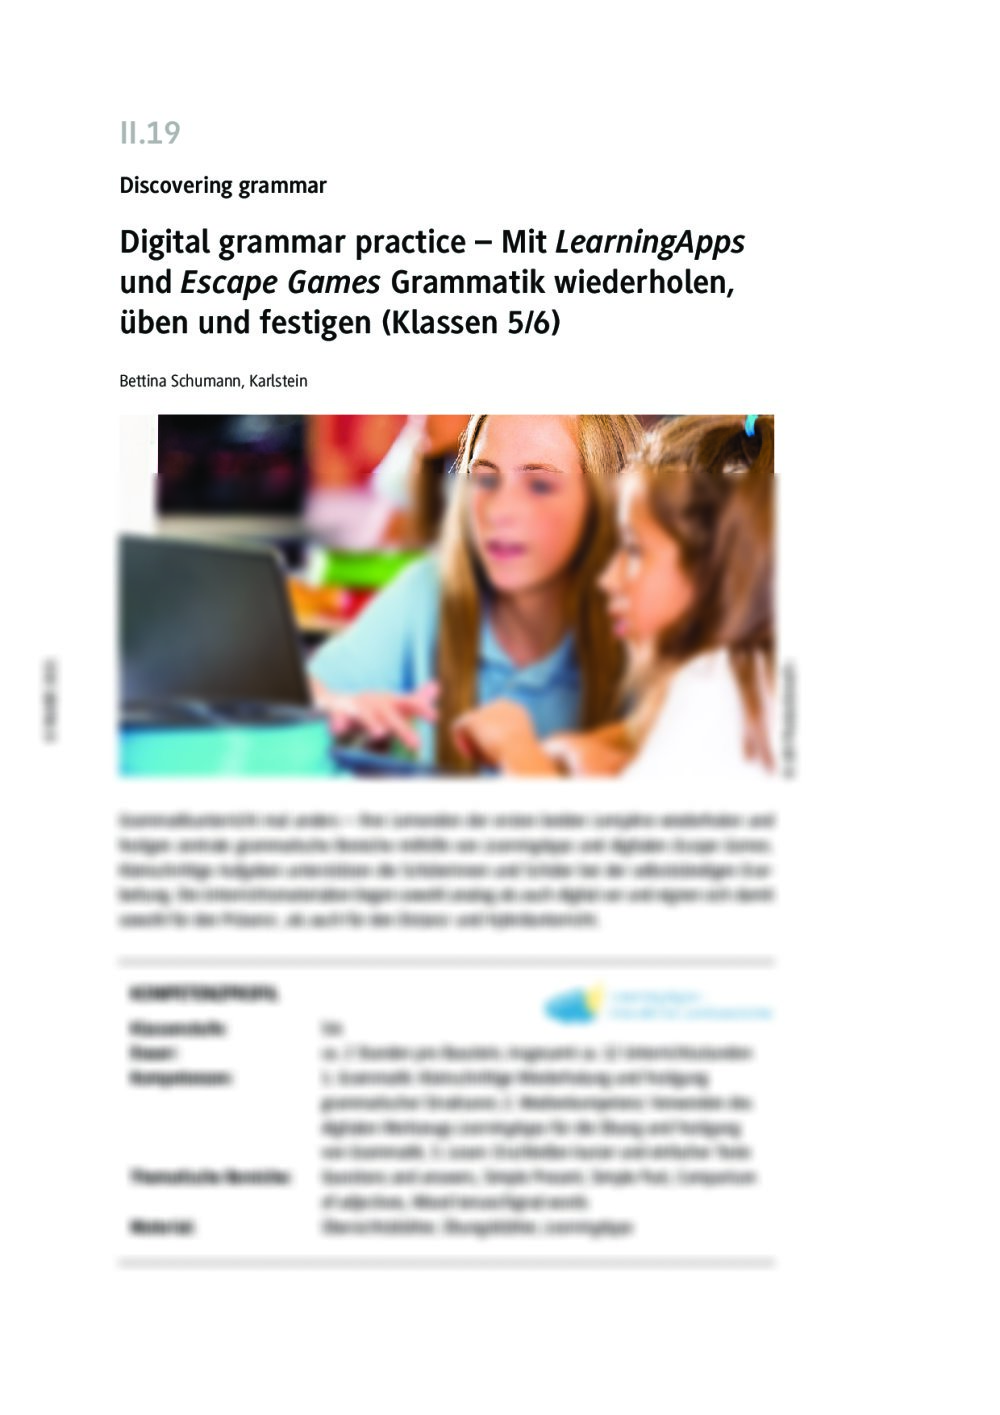 Digital grammar practice - Seite 1